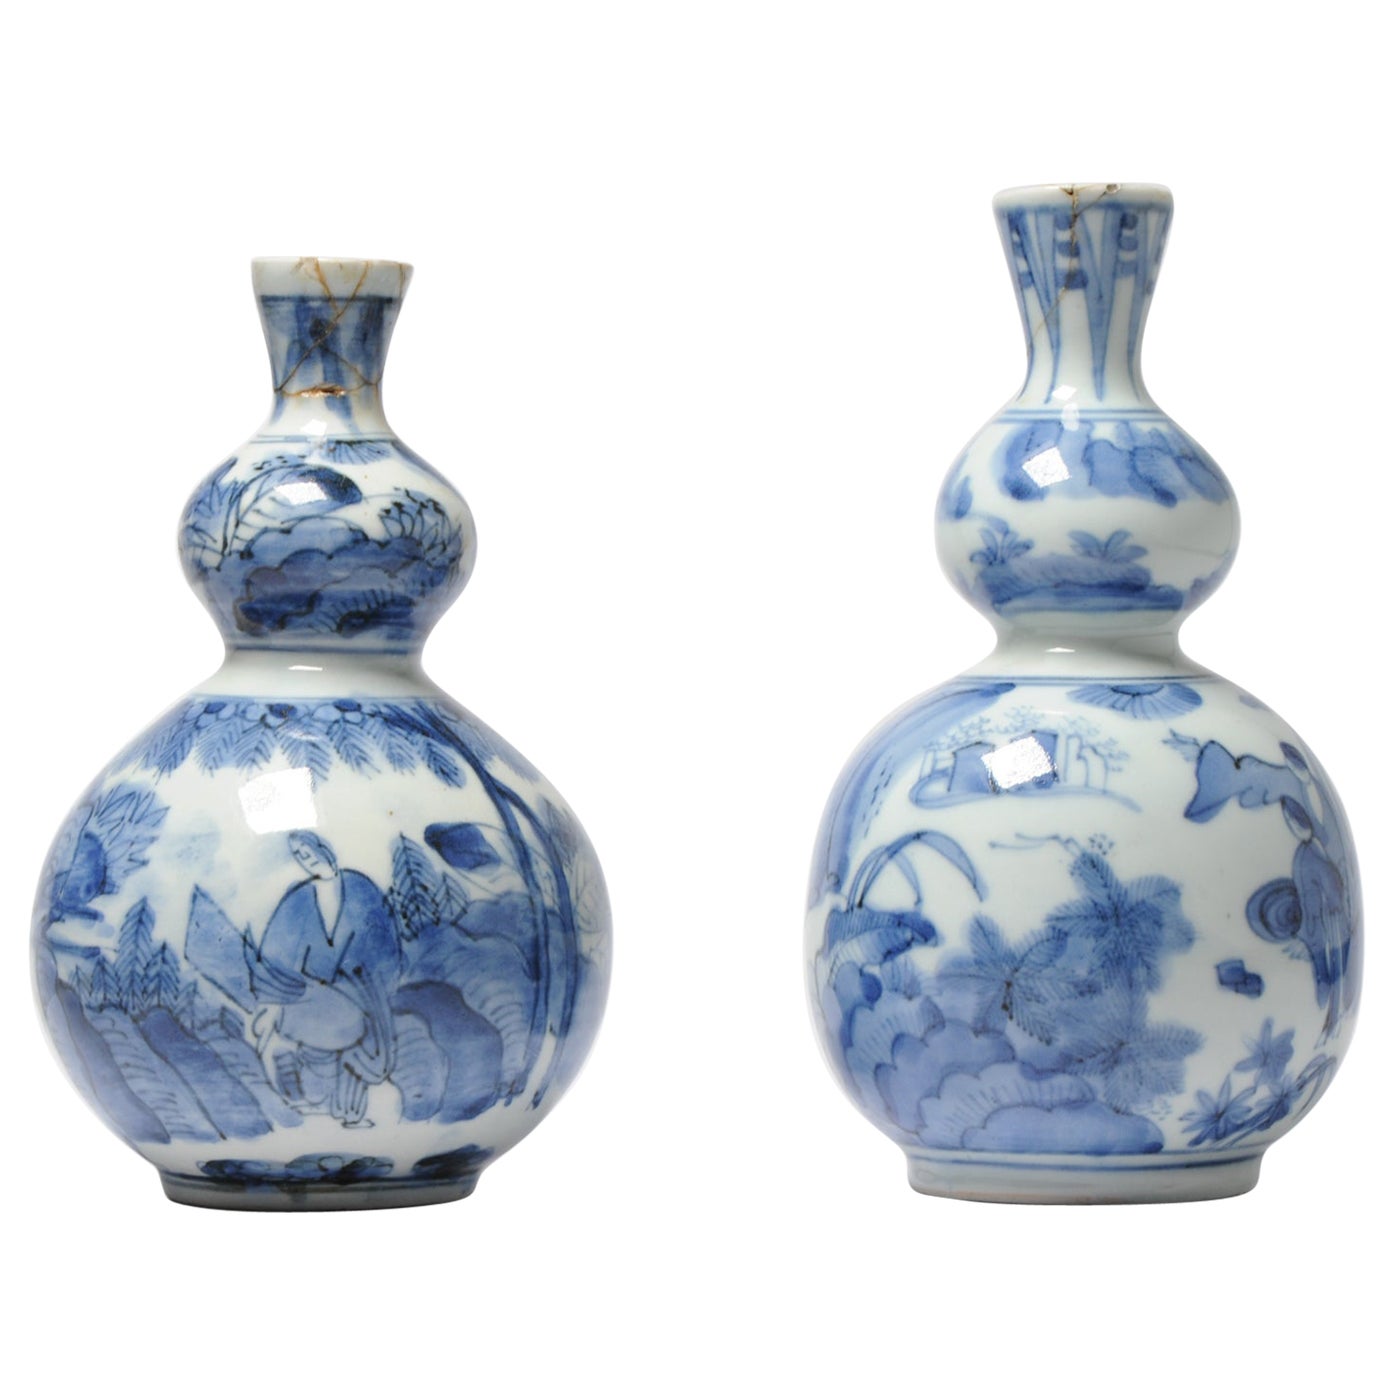 Vases japonais Arita anciens de la période Edo à double gourde représentant un paysage, 17-18e siècles